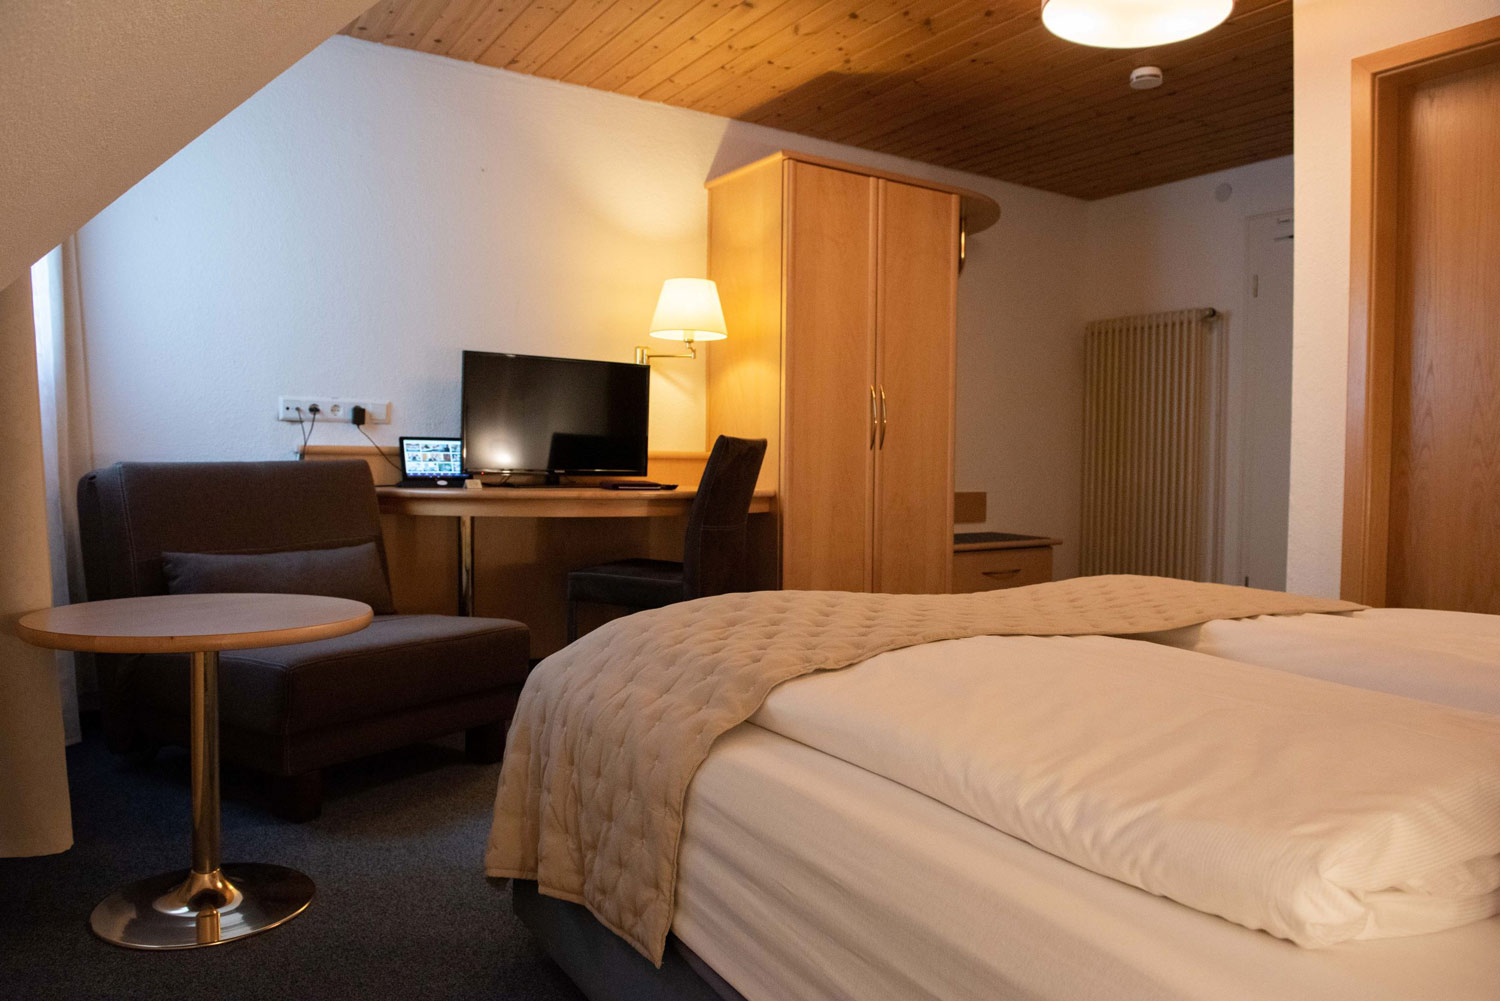 Die Gäste nächtigen im 3 Sterne superior Hotel im Allgaeu in weicher Bettwäsche.